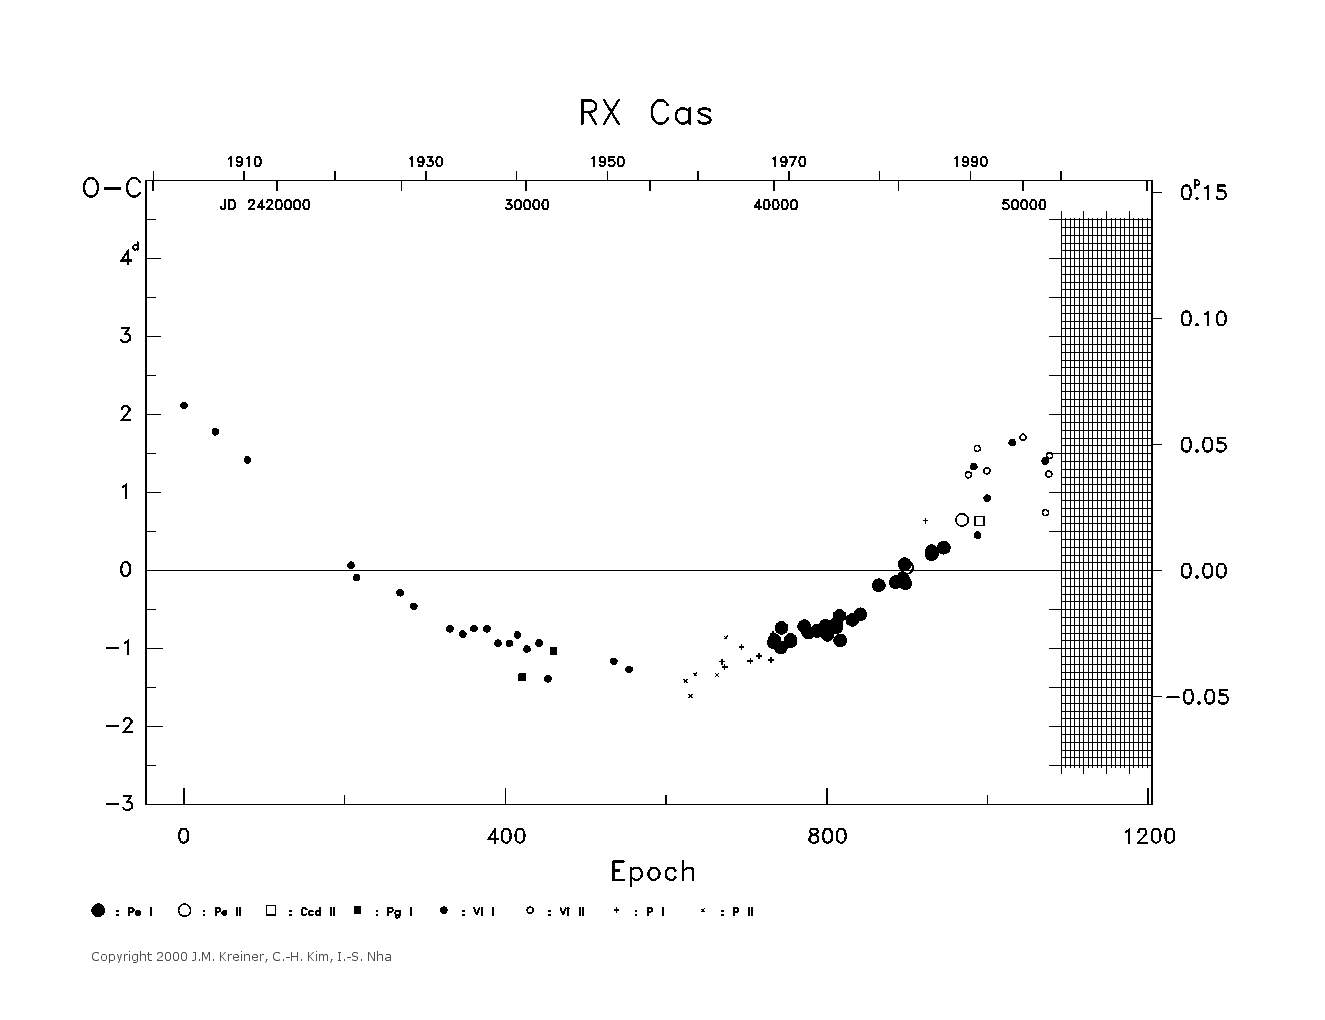 [IMAGE: large RX CAS O-C diagram]